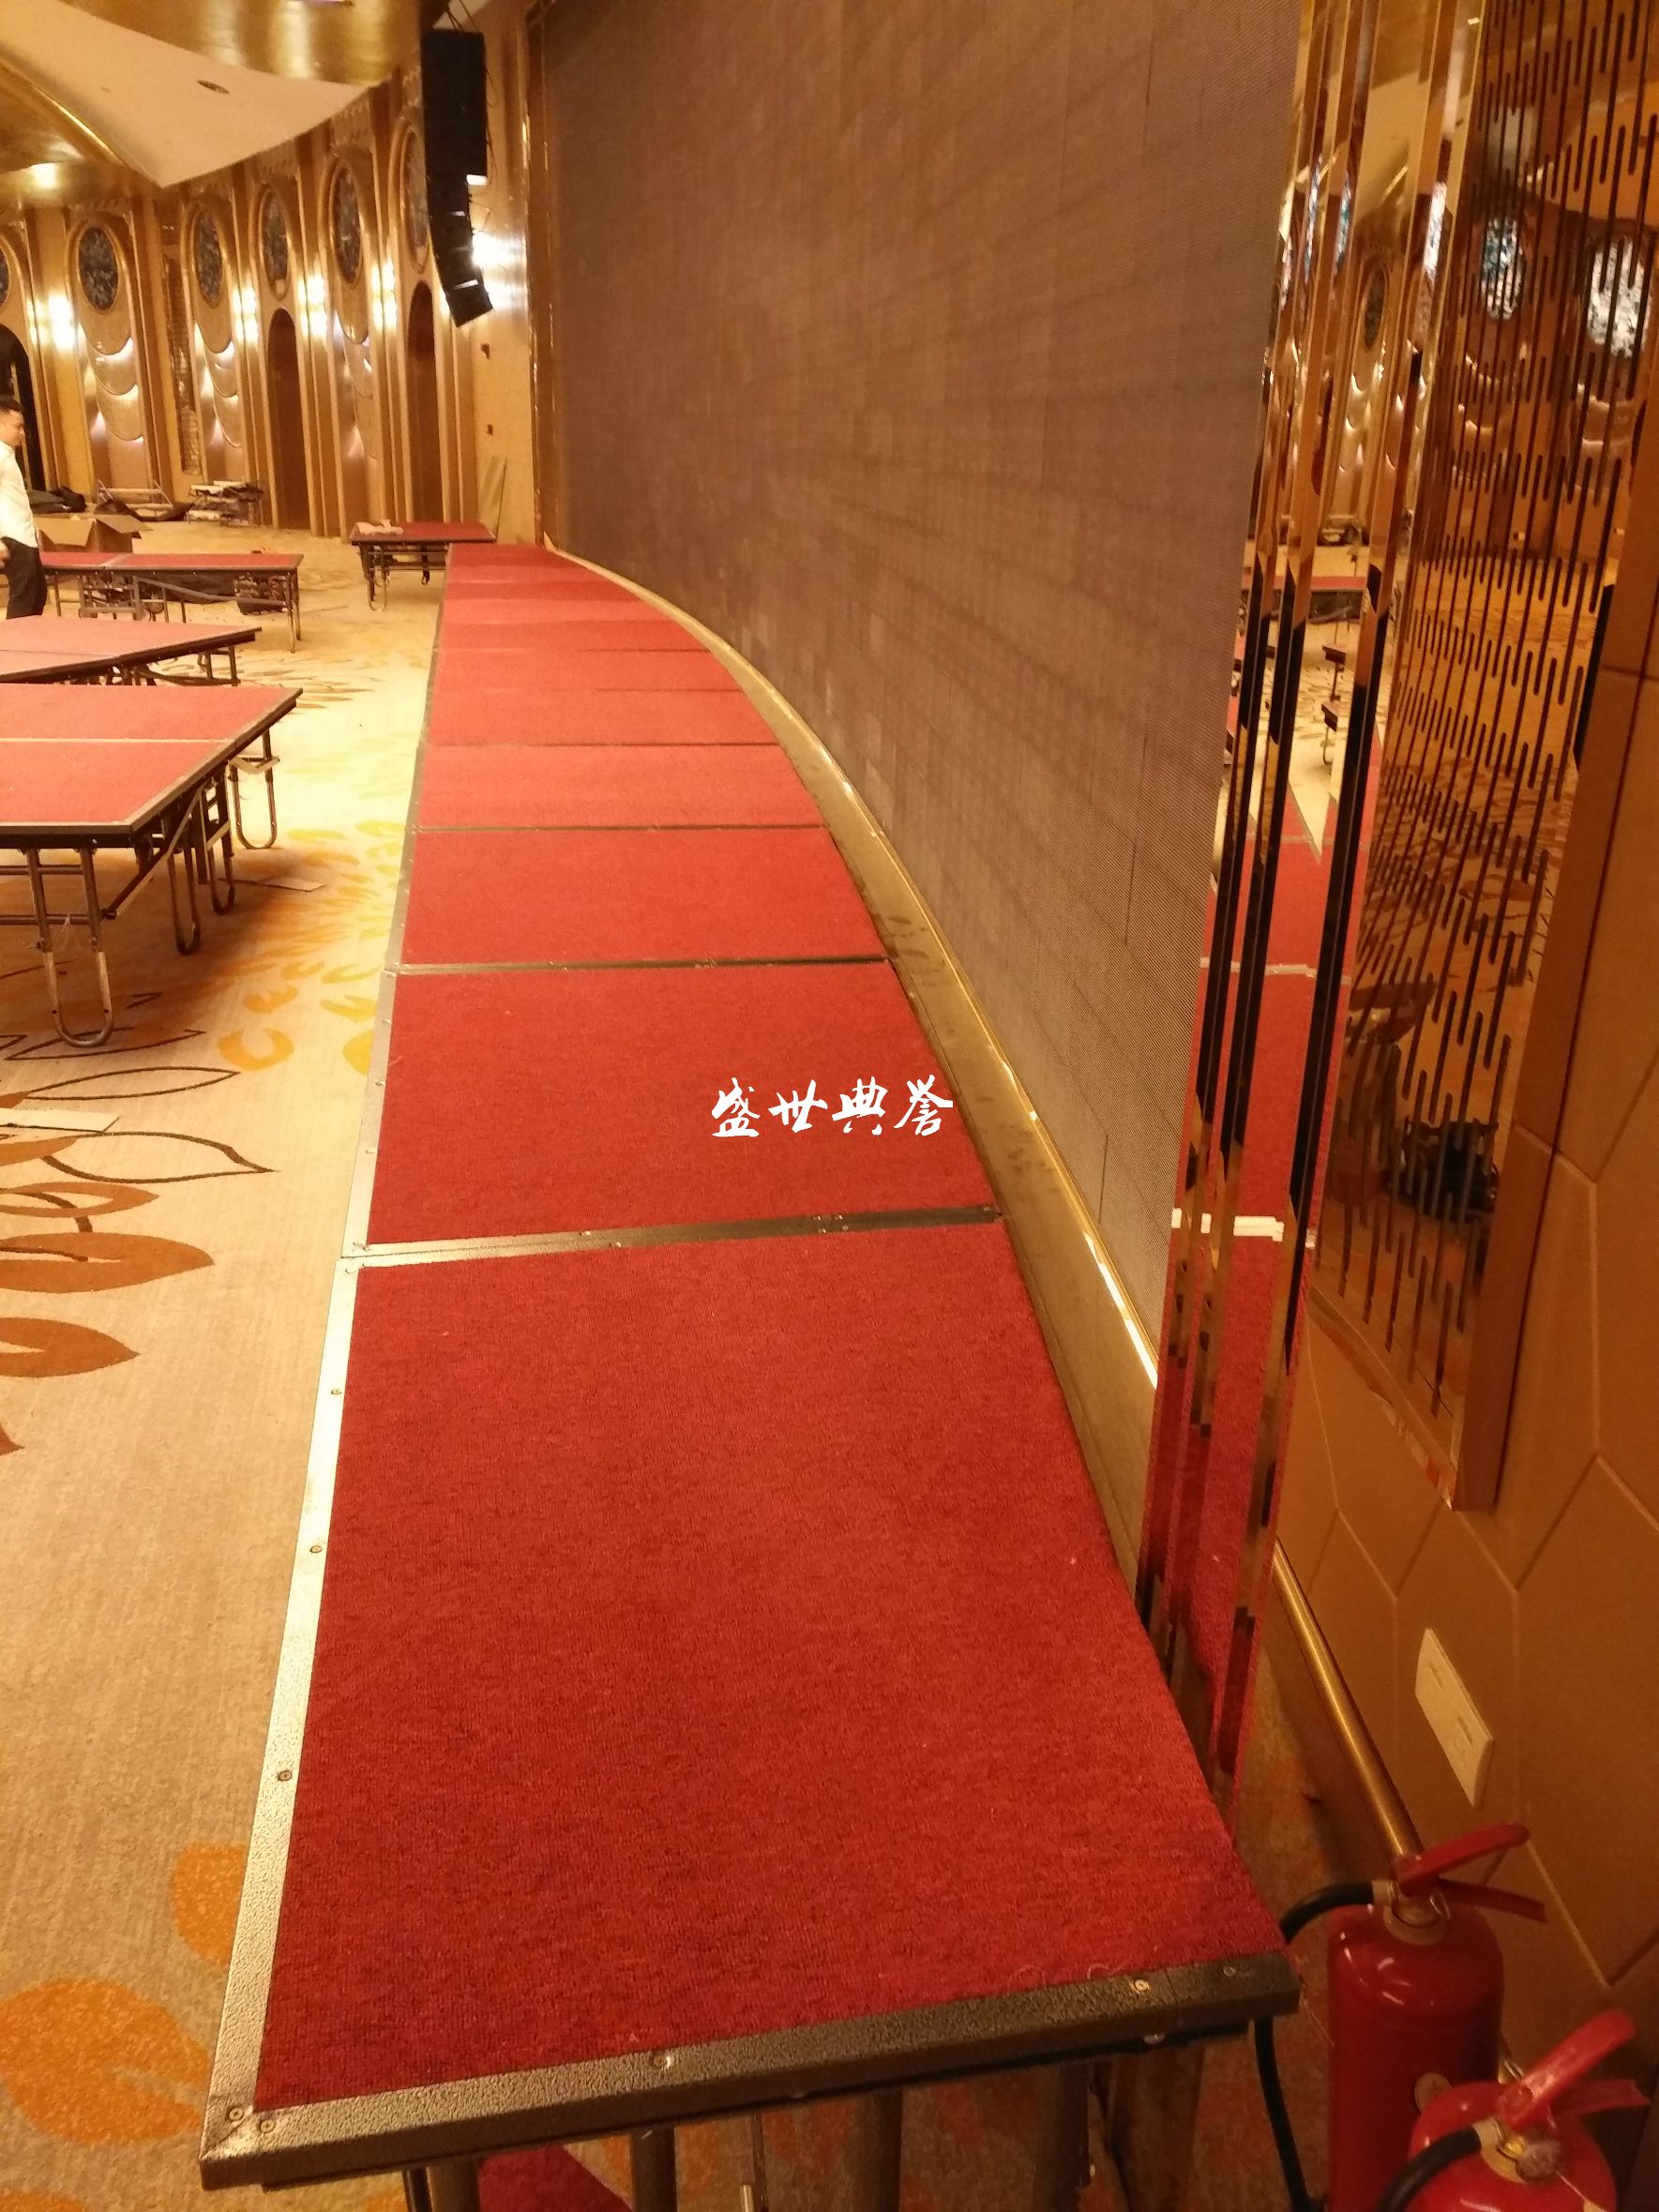 上海五星级酒店宴会厅活动舞台 宴会中心婚宴T台折叠升降拼装舞台详情图9